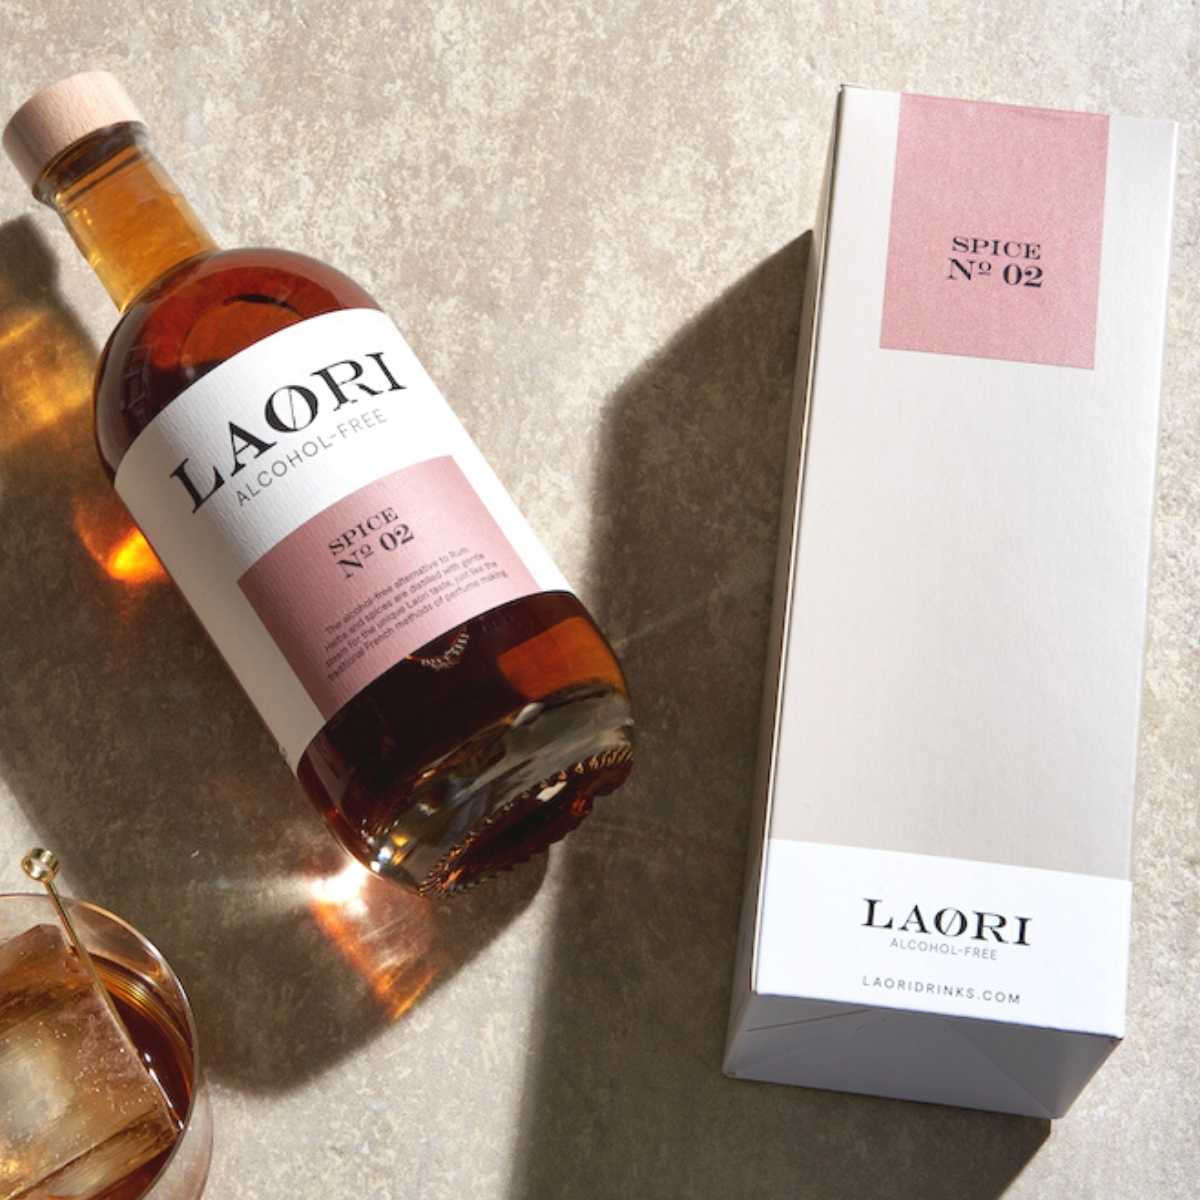 Laori Spice No 02 (0.5l) in an elegant gift box